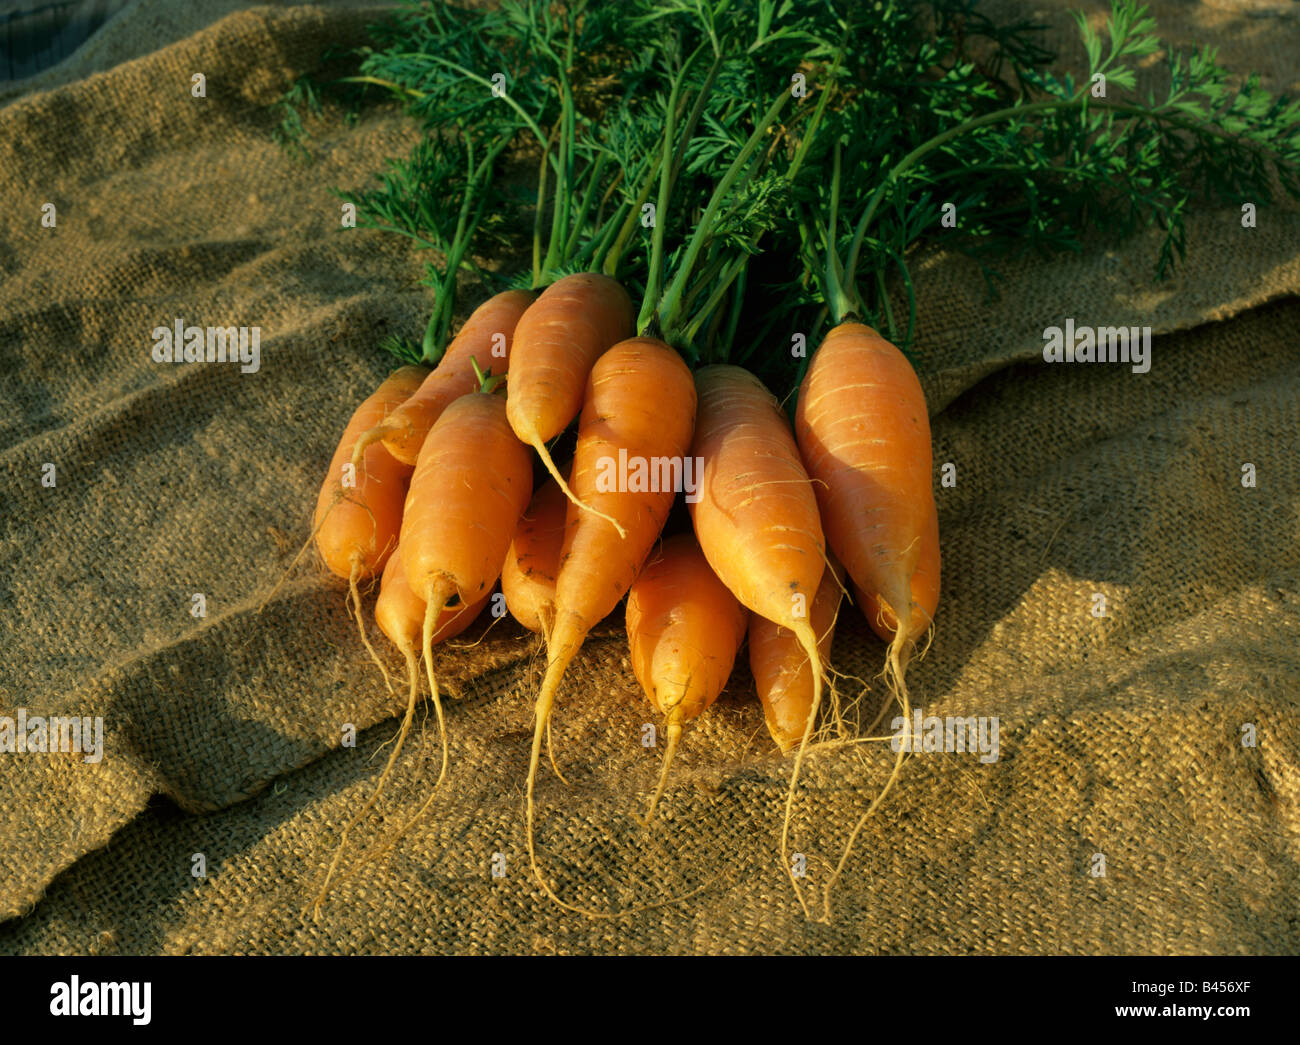 Garden Carrots Imperator Daucus carota var sativus  USA Stock Photo